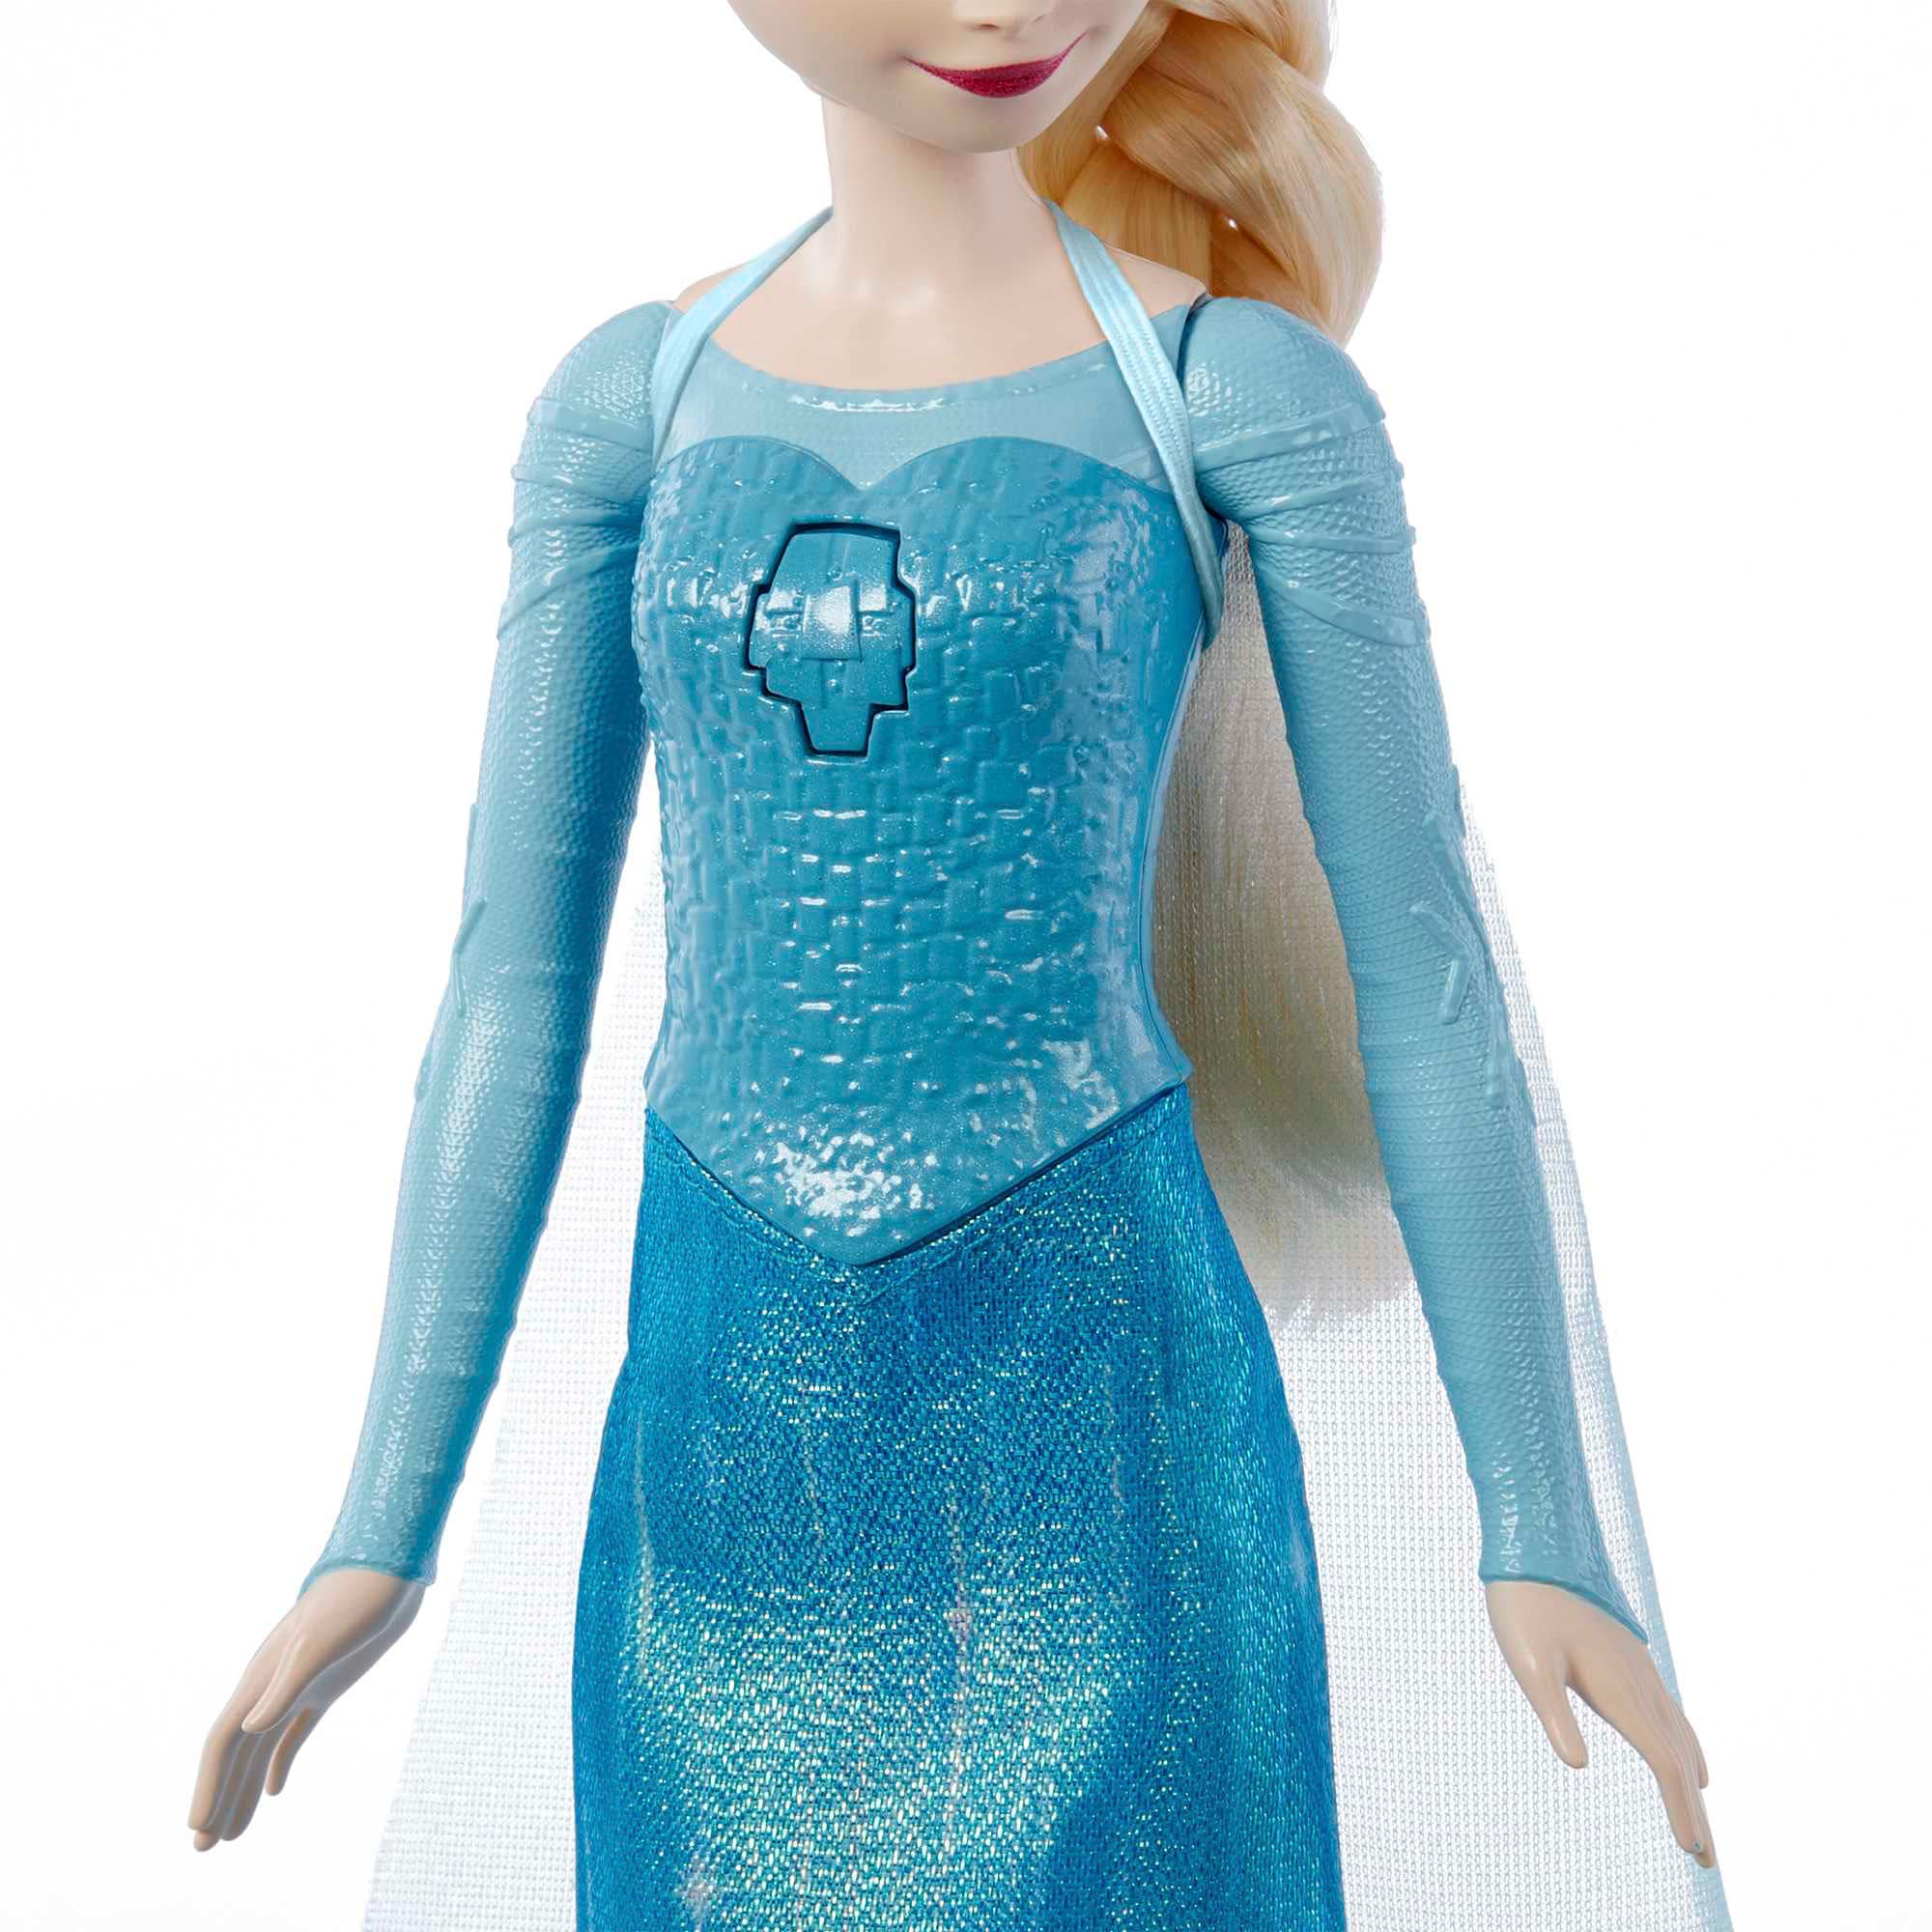 Mattel® Anziehpuppe »Disney Die Eiskönigin, singende Elsa« online | OTTO